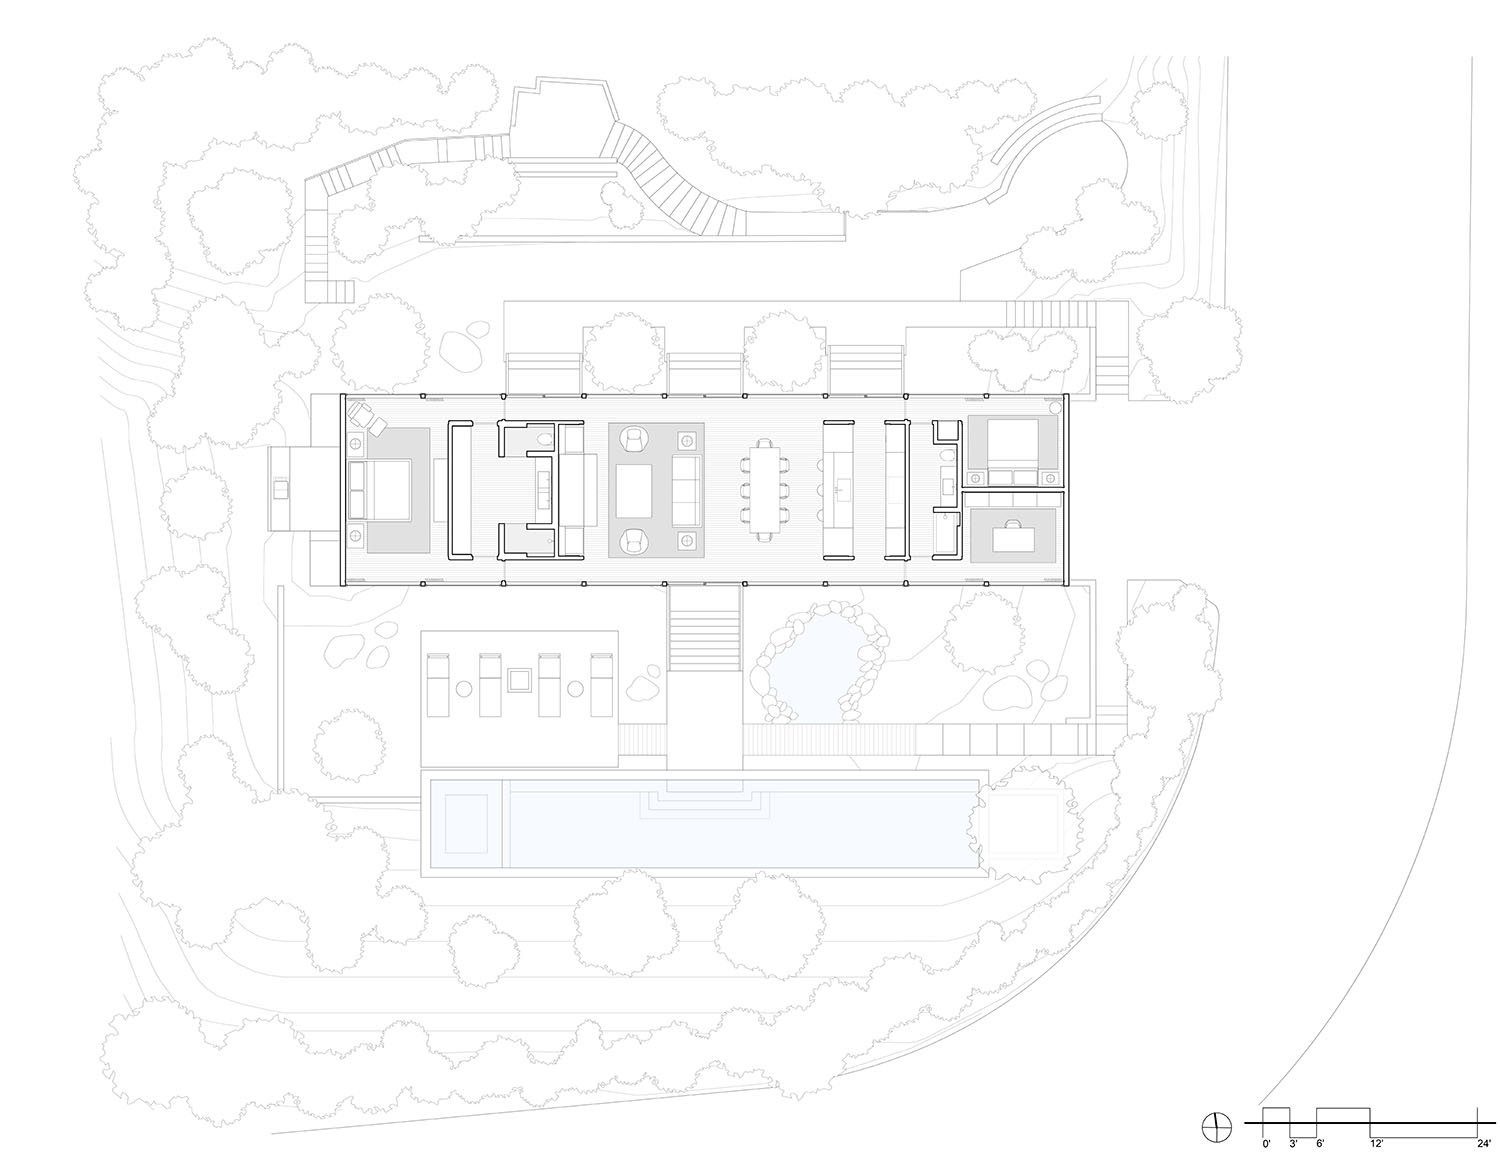 New Floorplan with Site | Woods + Dangaran